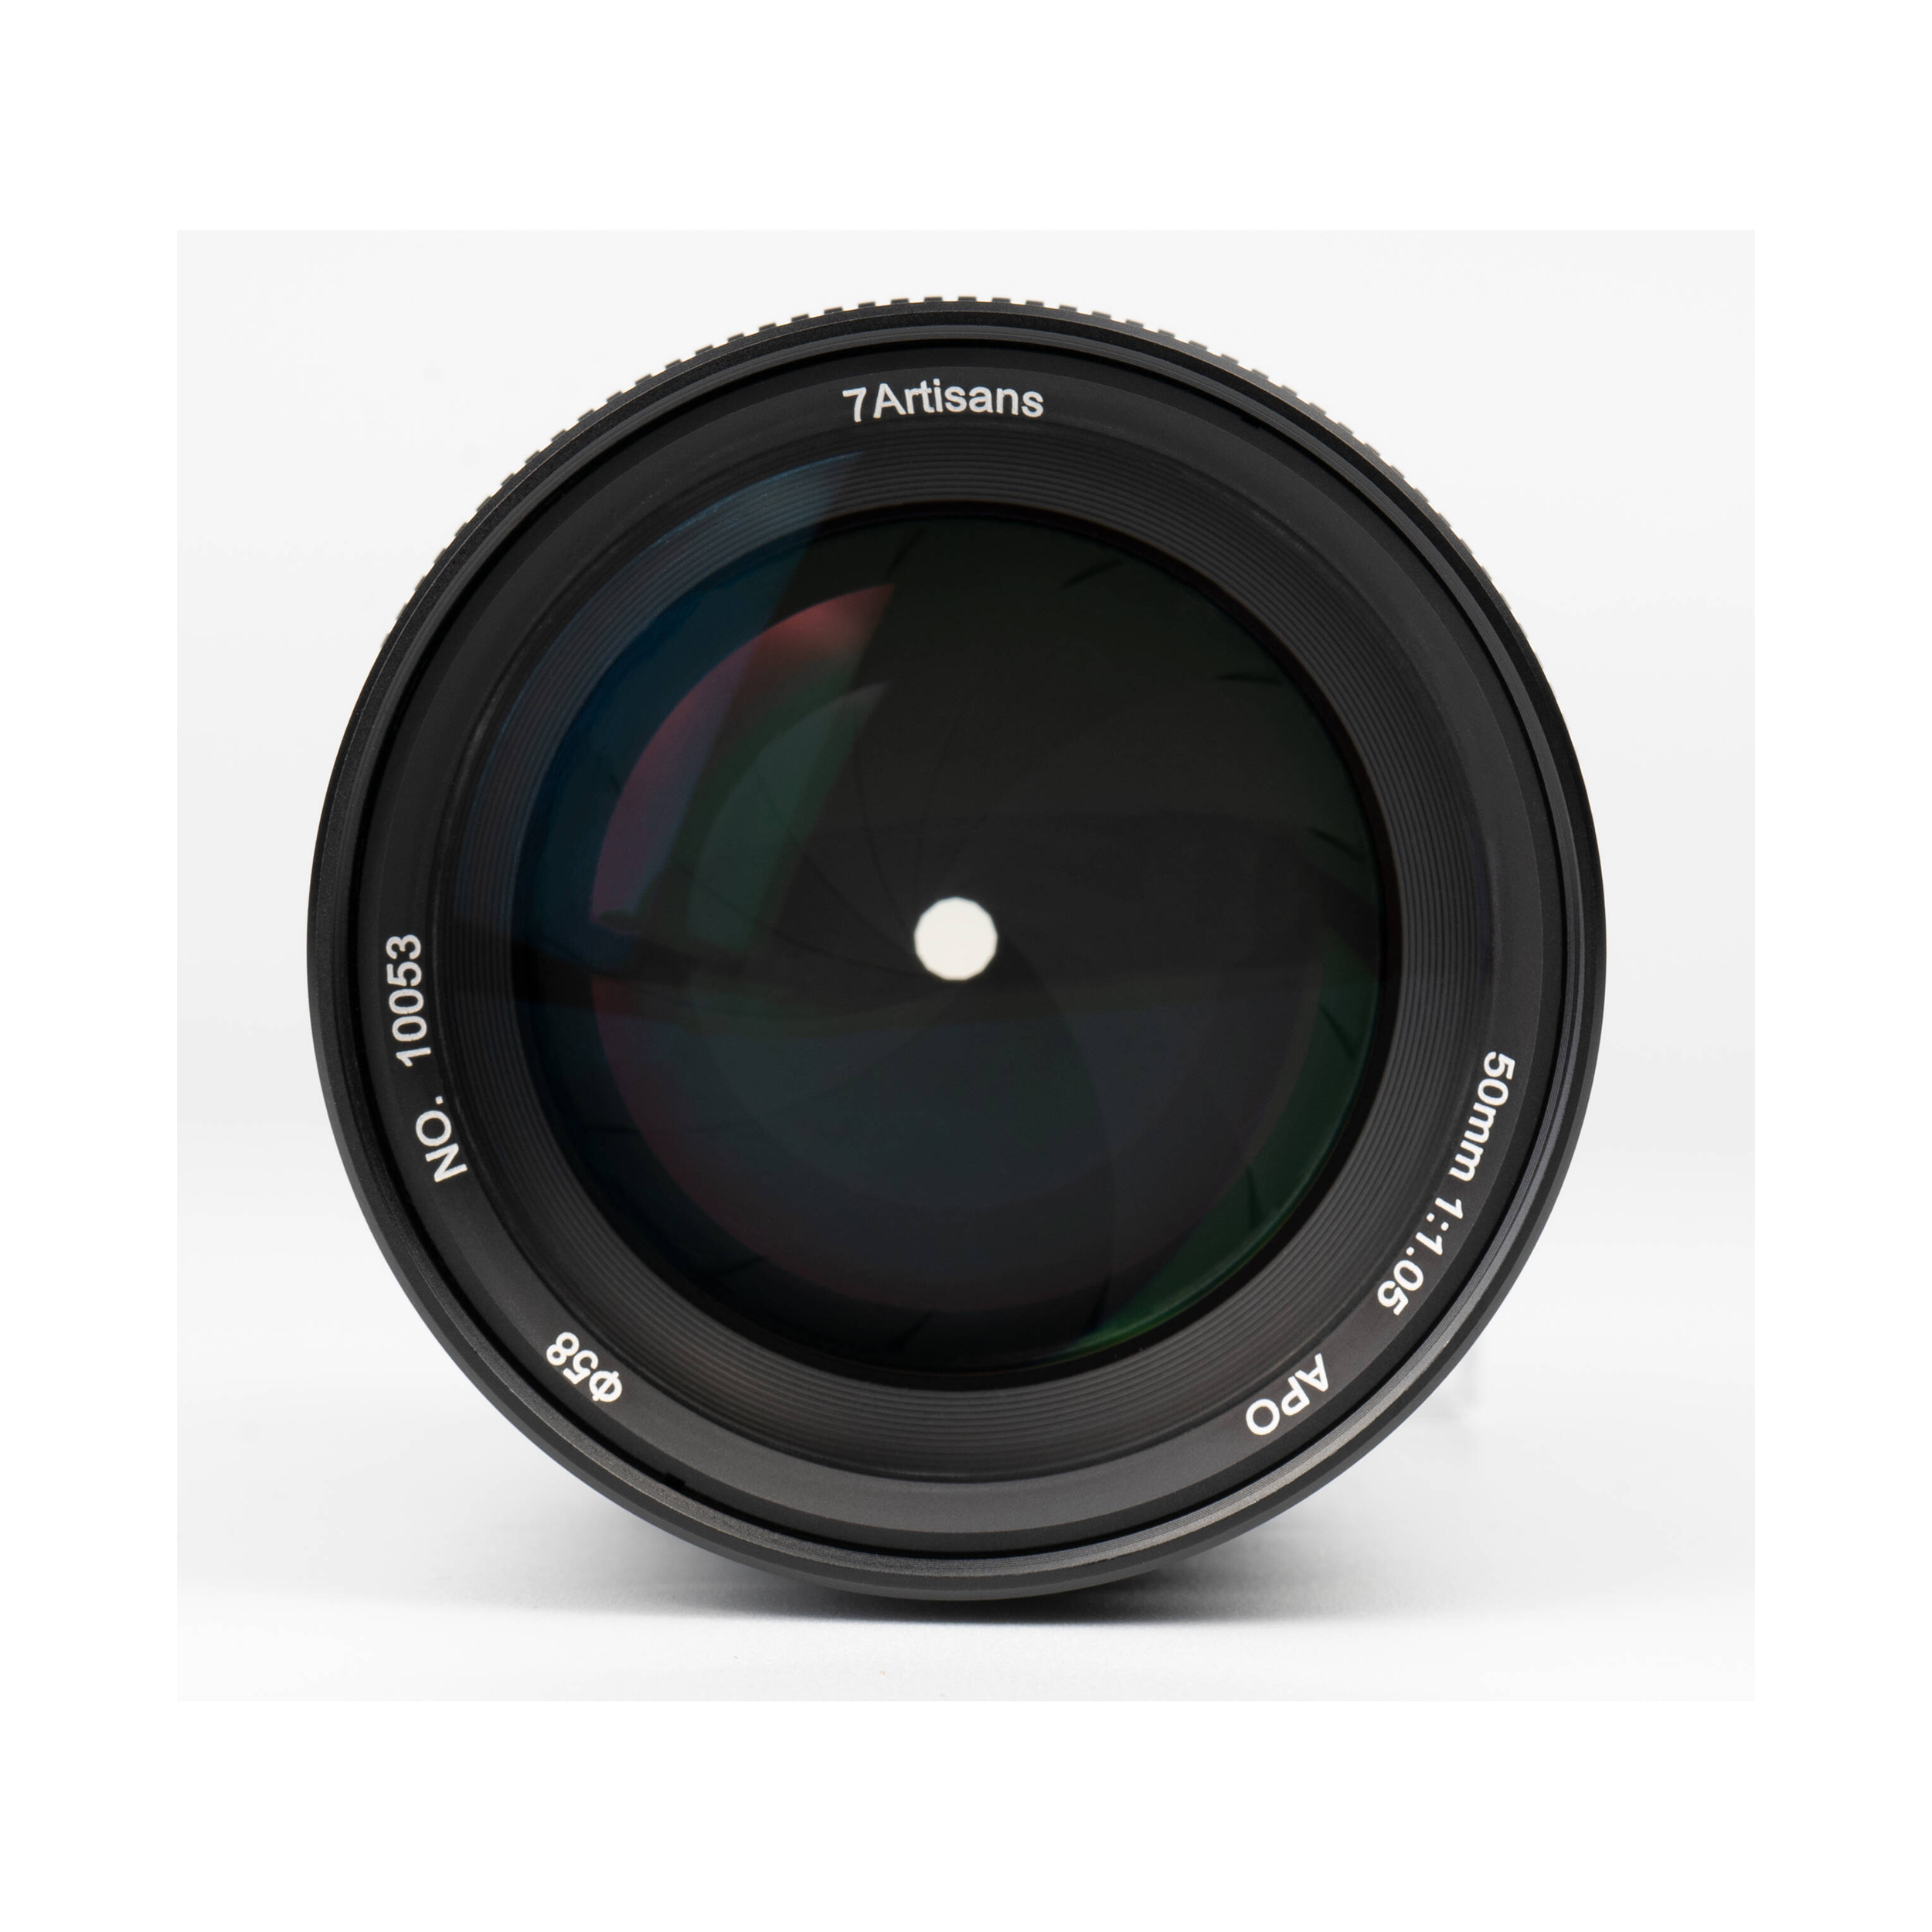 7artisans photoélectrique 50 mm f / 1,05 objectif pour le support Sony E